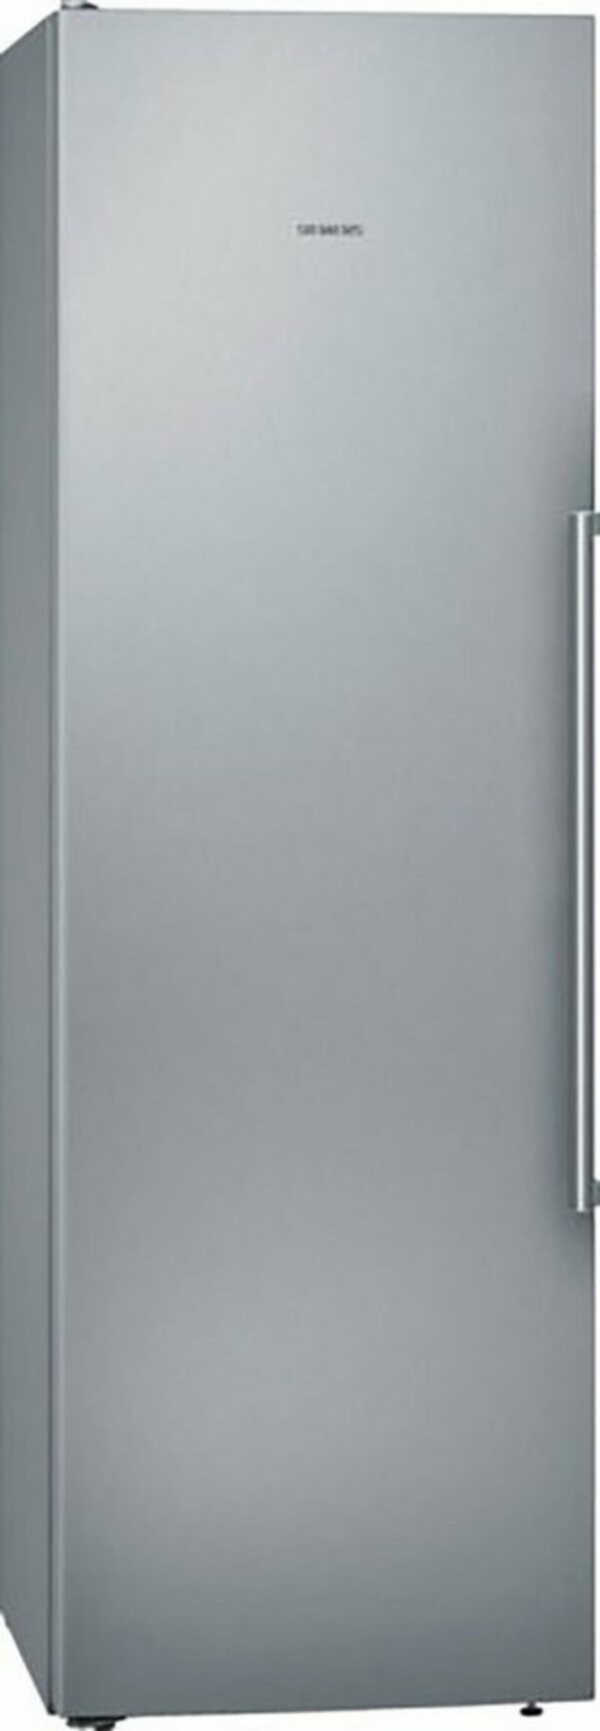 Bild 1 von SIEMENS Kühlschrank KS36VAIDP, 186 cm hoch, 60 cm breit